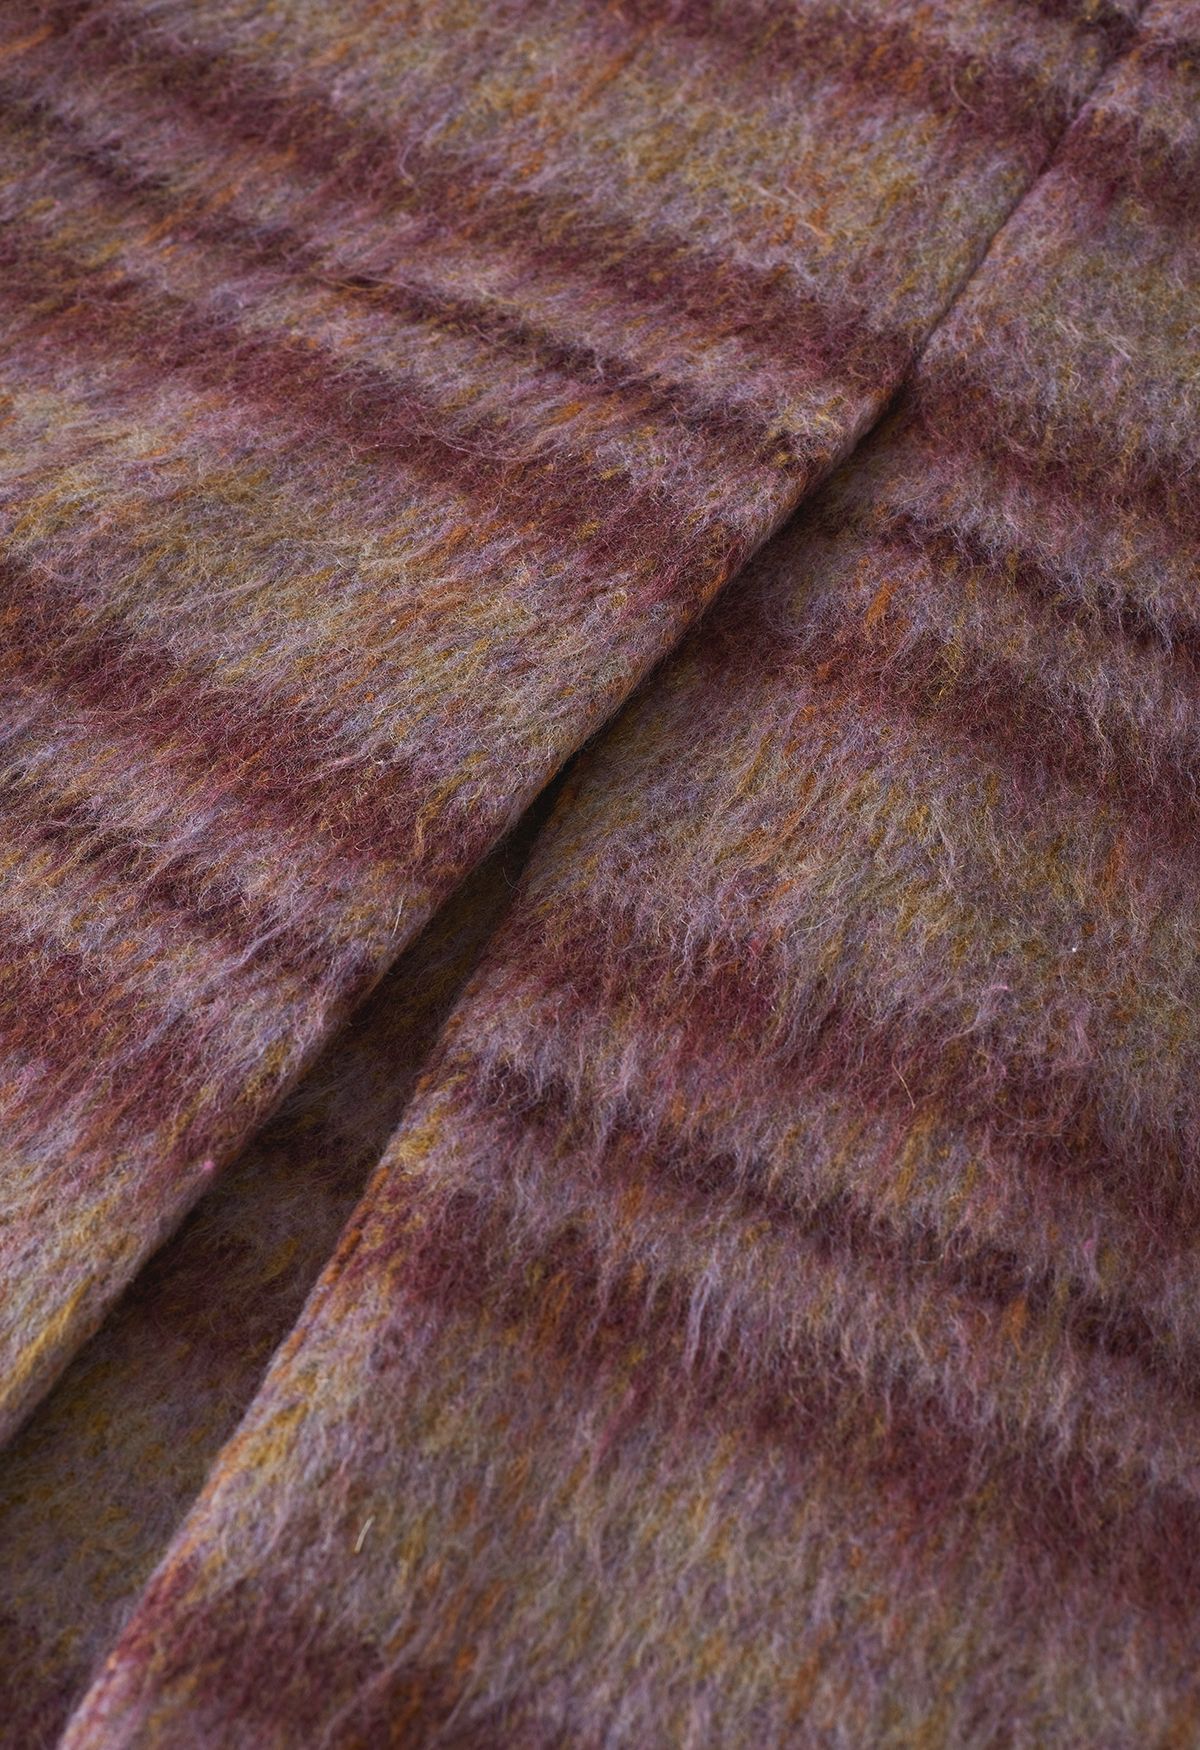 Abrigo largo de mezcla de lana con solapa de pico a cuadros en baya